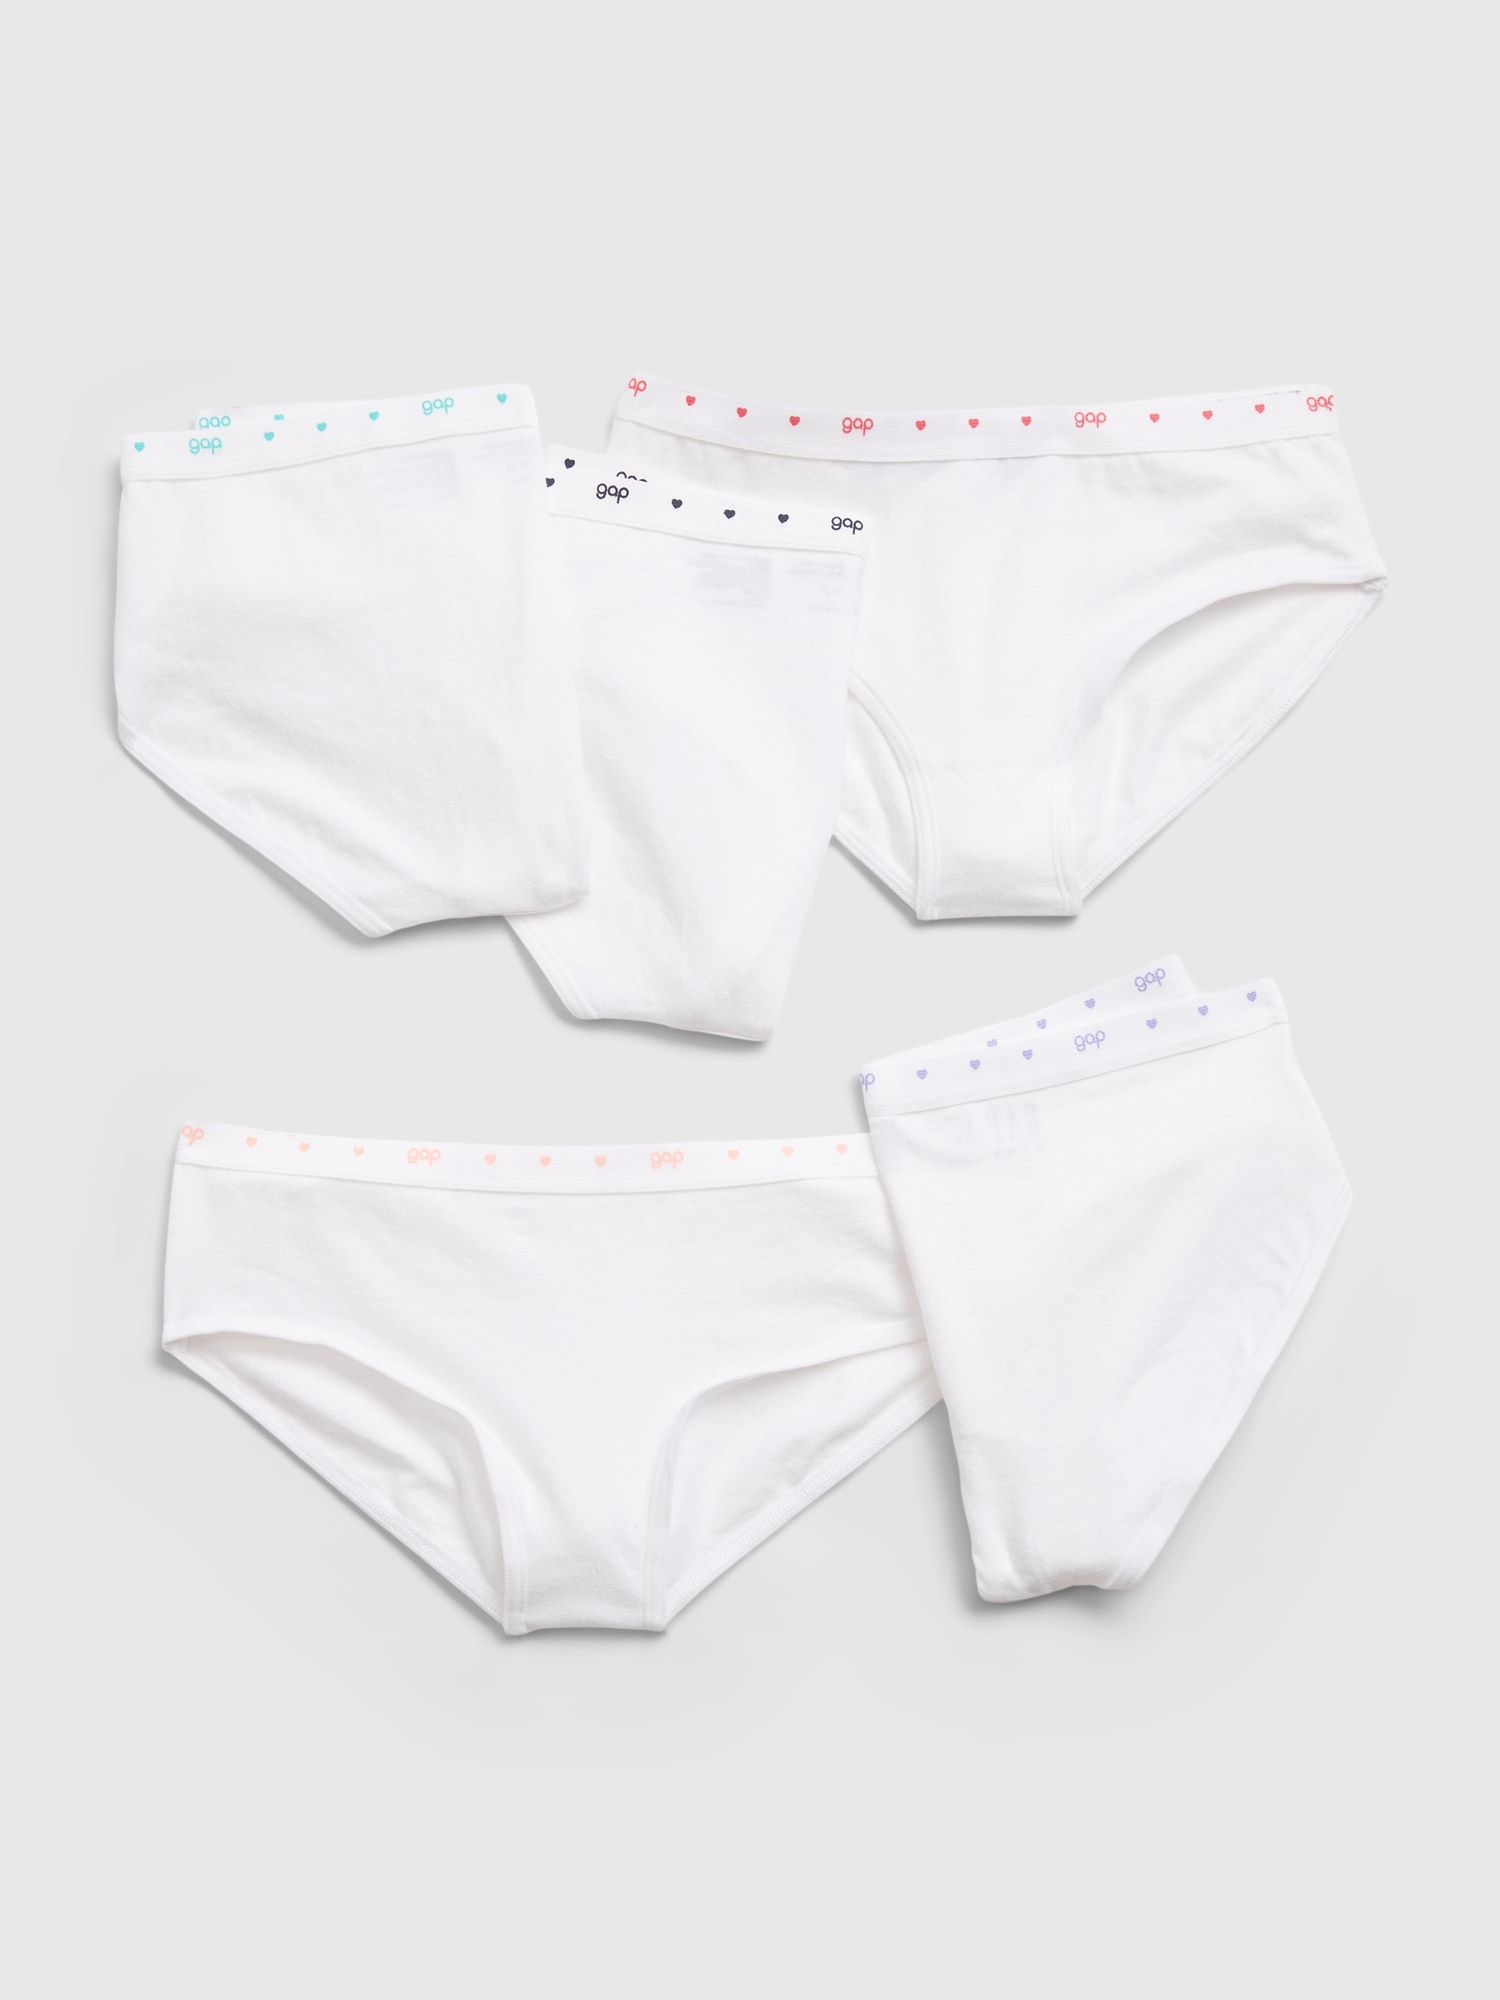 NWT Girls Greendog Bikini Underwear X-Small (2-3) Small (4-6) M(8-10) L(12-14)